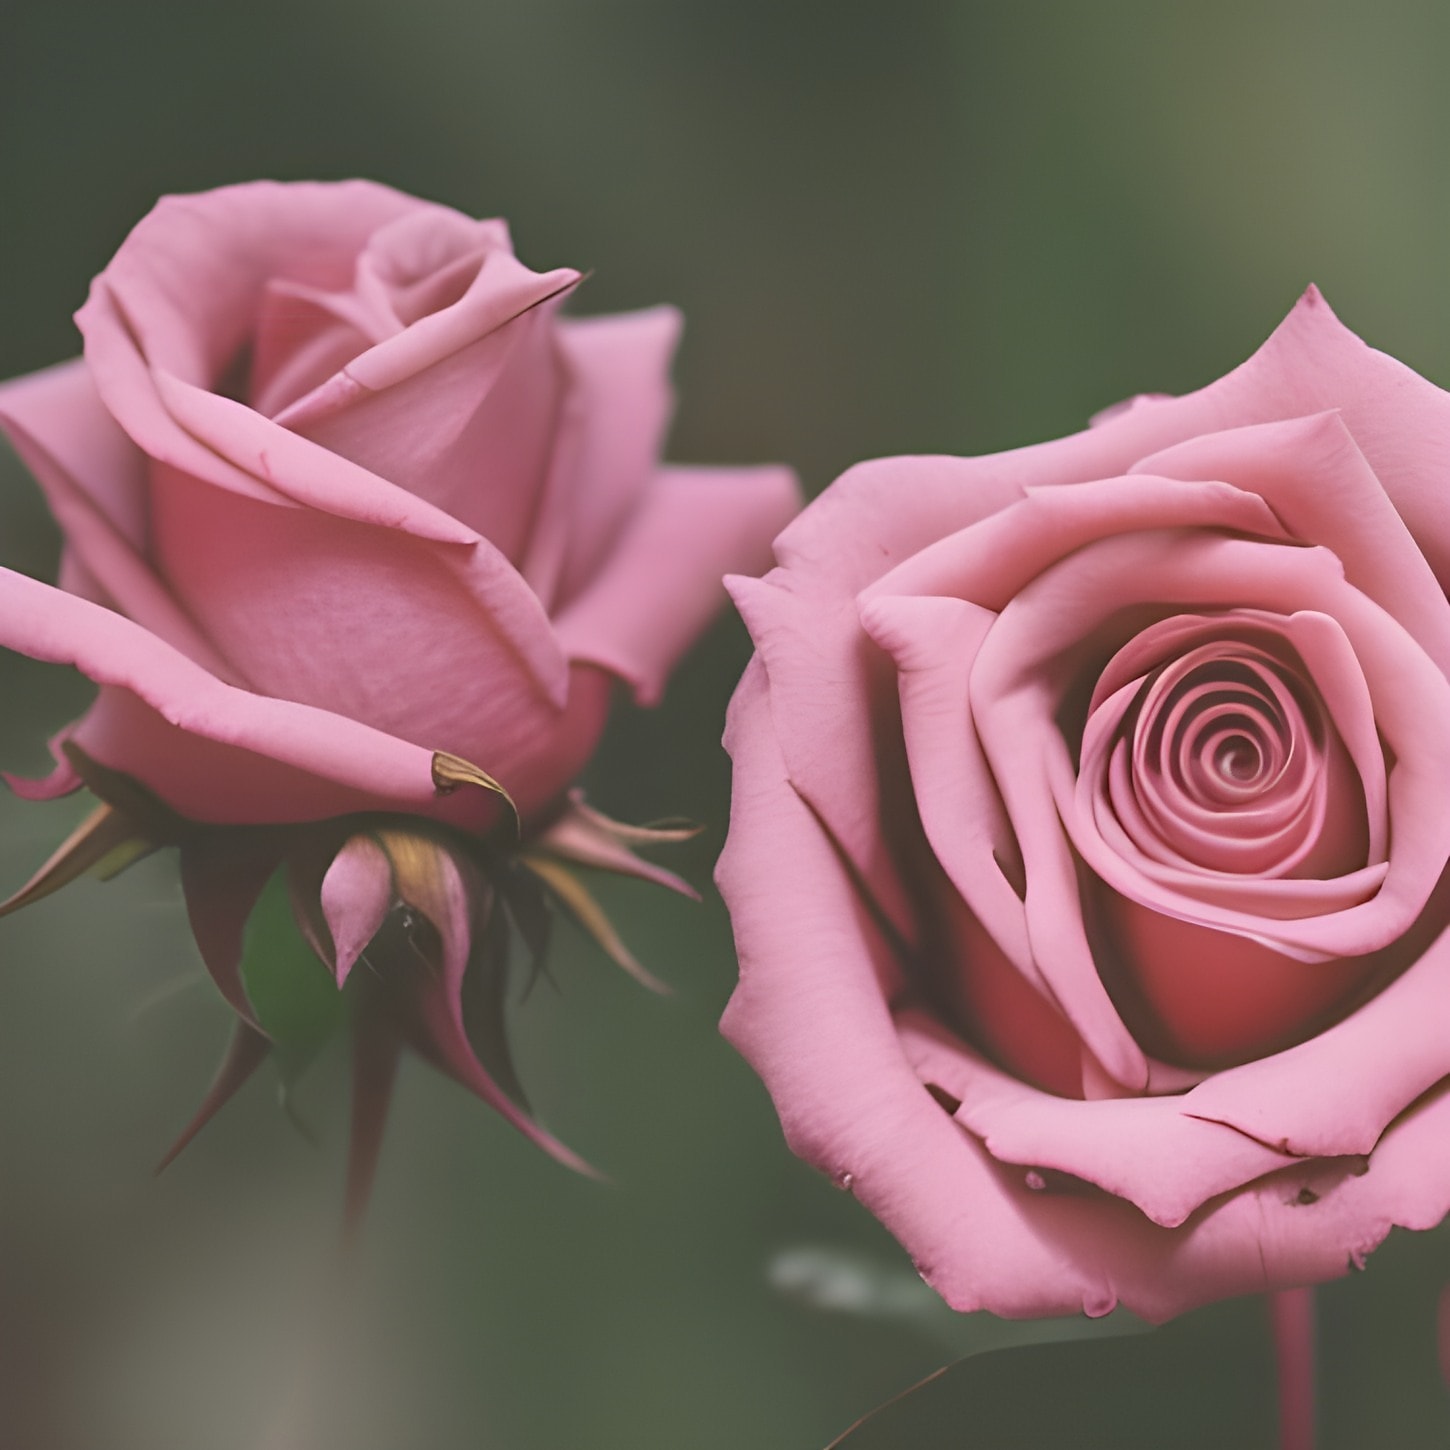 παστέλ, ροζ, τριαντάφυλλα, λουλούδι στον κήπο, μπουμπούκι, ο οφθαλμός, άνθος, ροζ